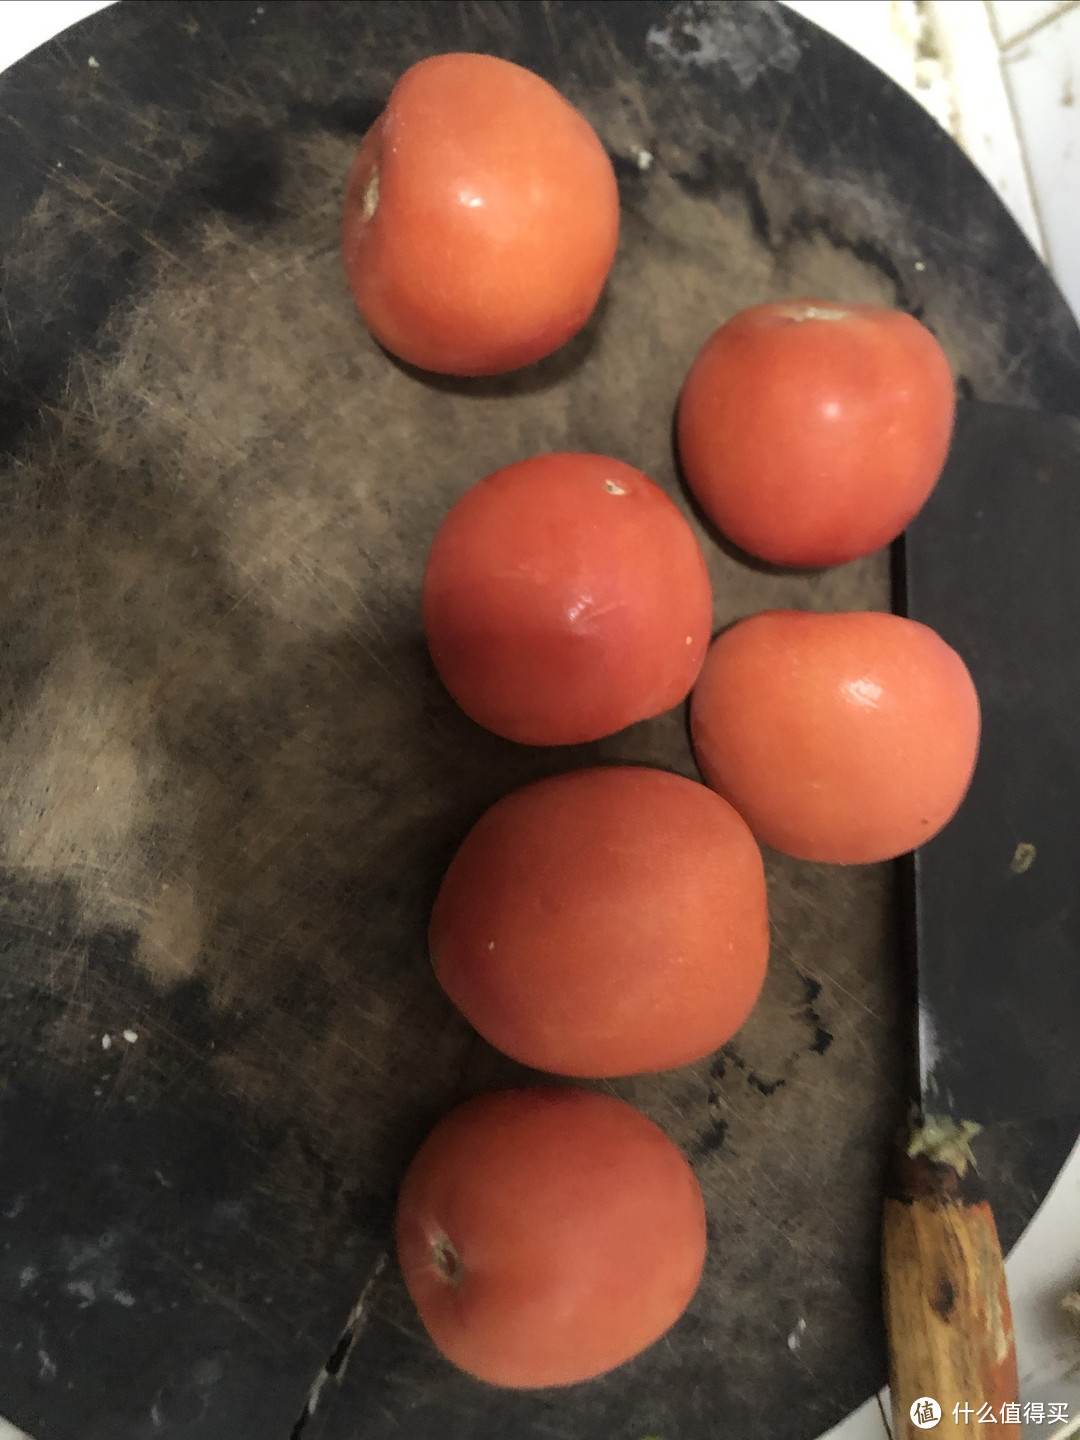 春天的番茄炒鸡蛋，特别鲜美